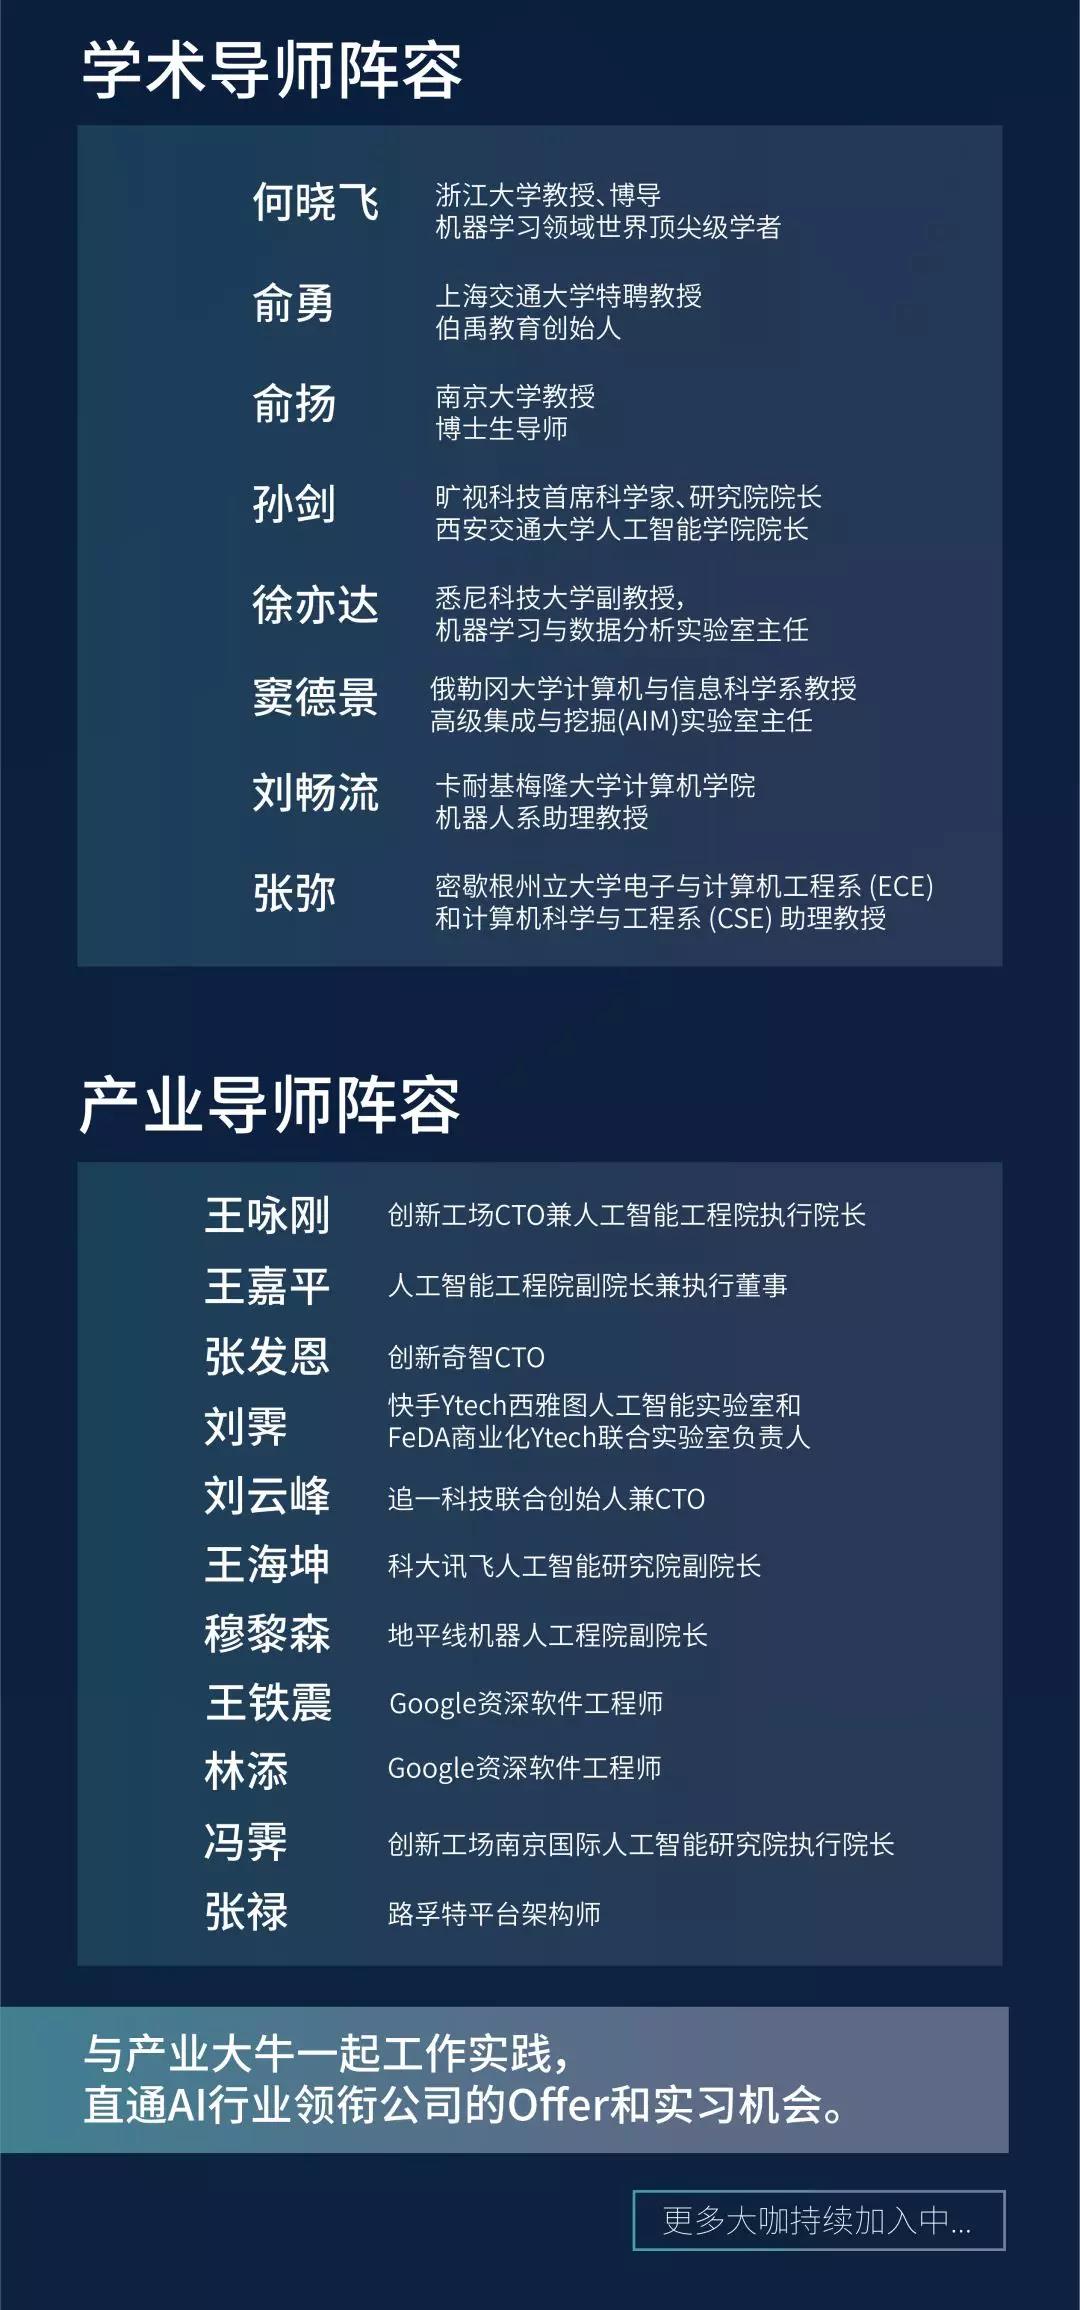 创新工场南京国际人工智能研究院冯霁：我们要解决当前AI系统的安全性问题